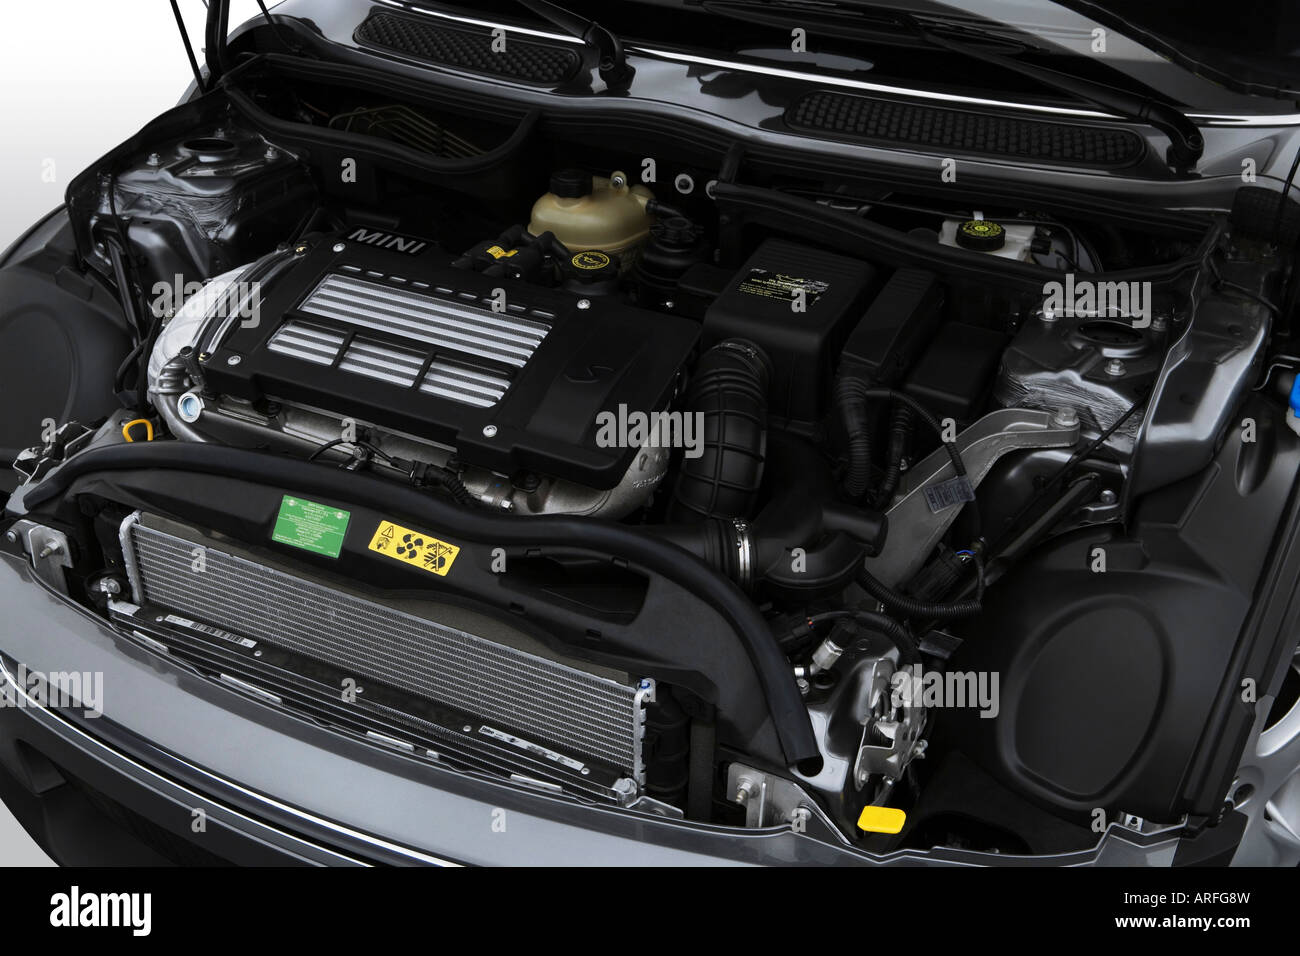 2007 MINI Cooper S in Silver - Engine Stock Photo - Alamy